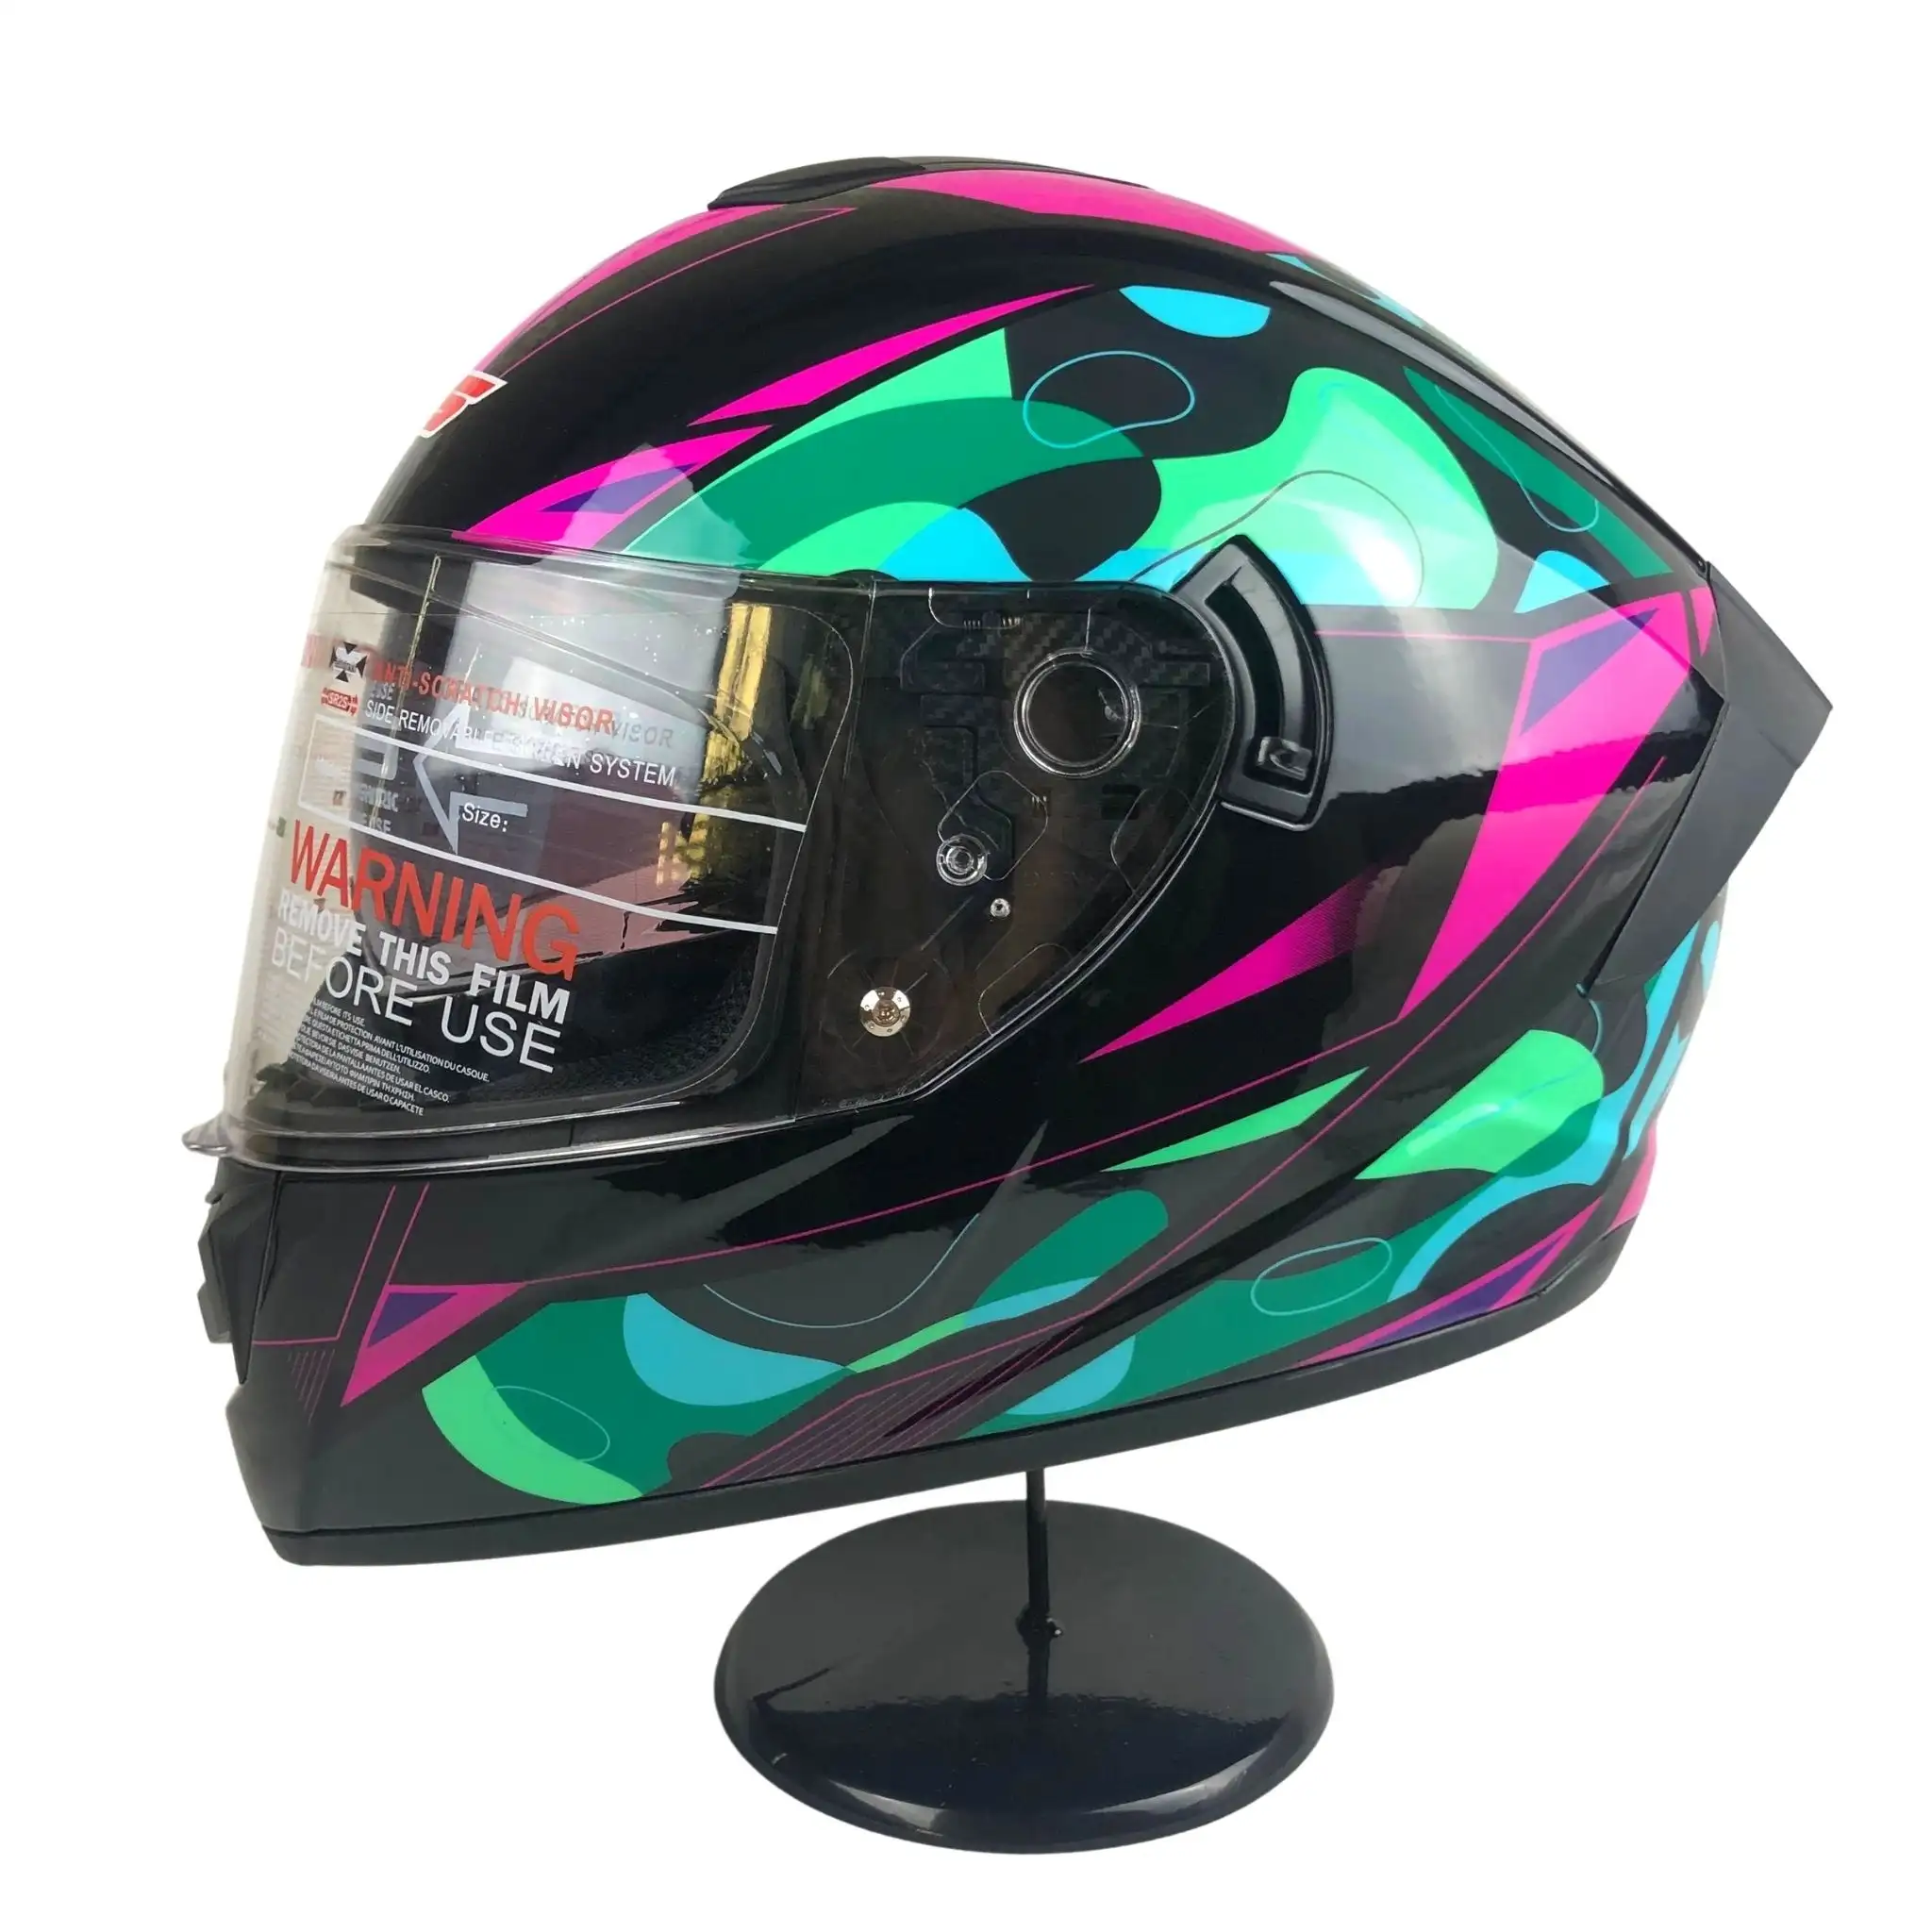 मोटर खेल हेलमेट 2022 गर्म बिक्री डॉट प्रमाणित डबल छज्जा हेलमेट हटाने योग्य आंतरिक पूरा चेहरा हेलमेट